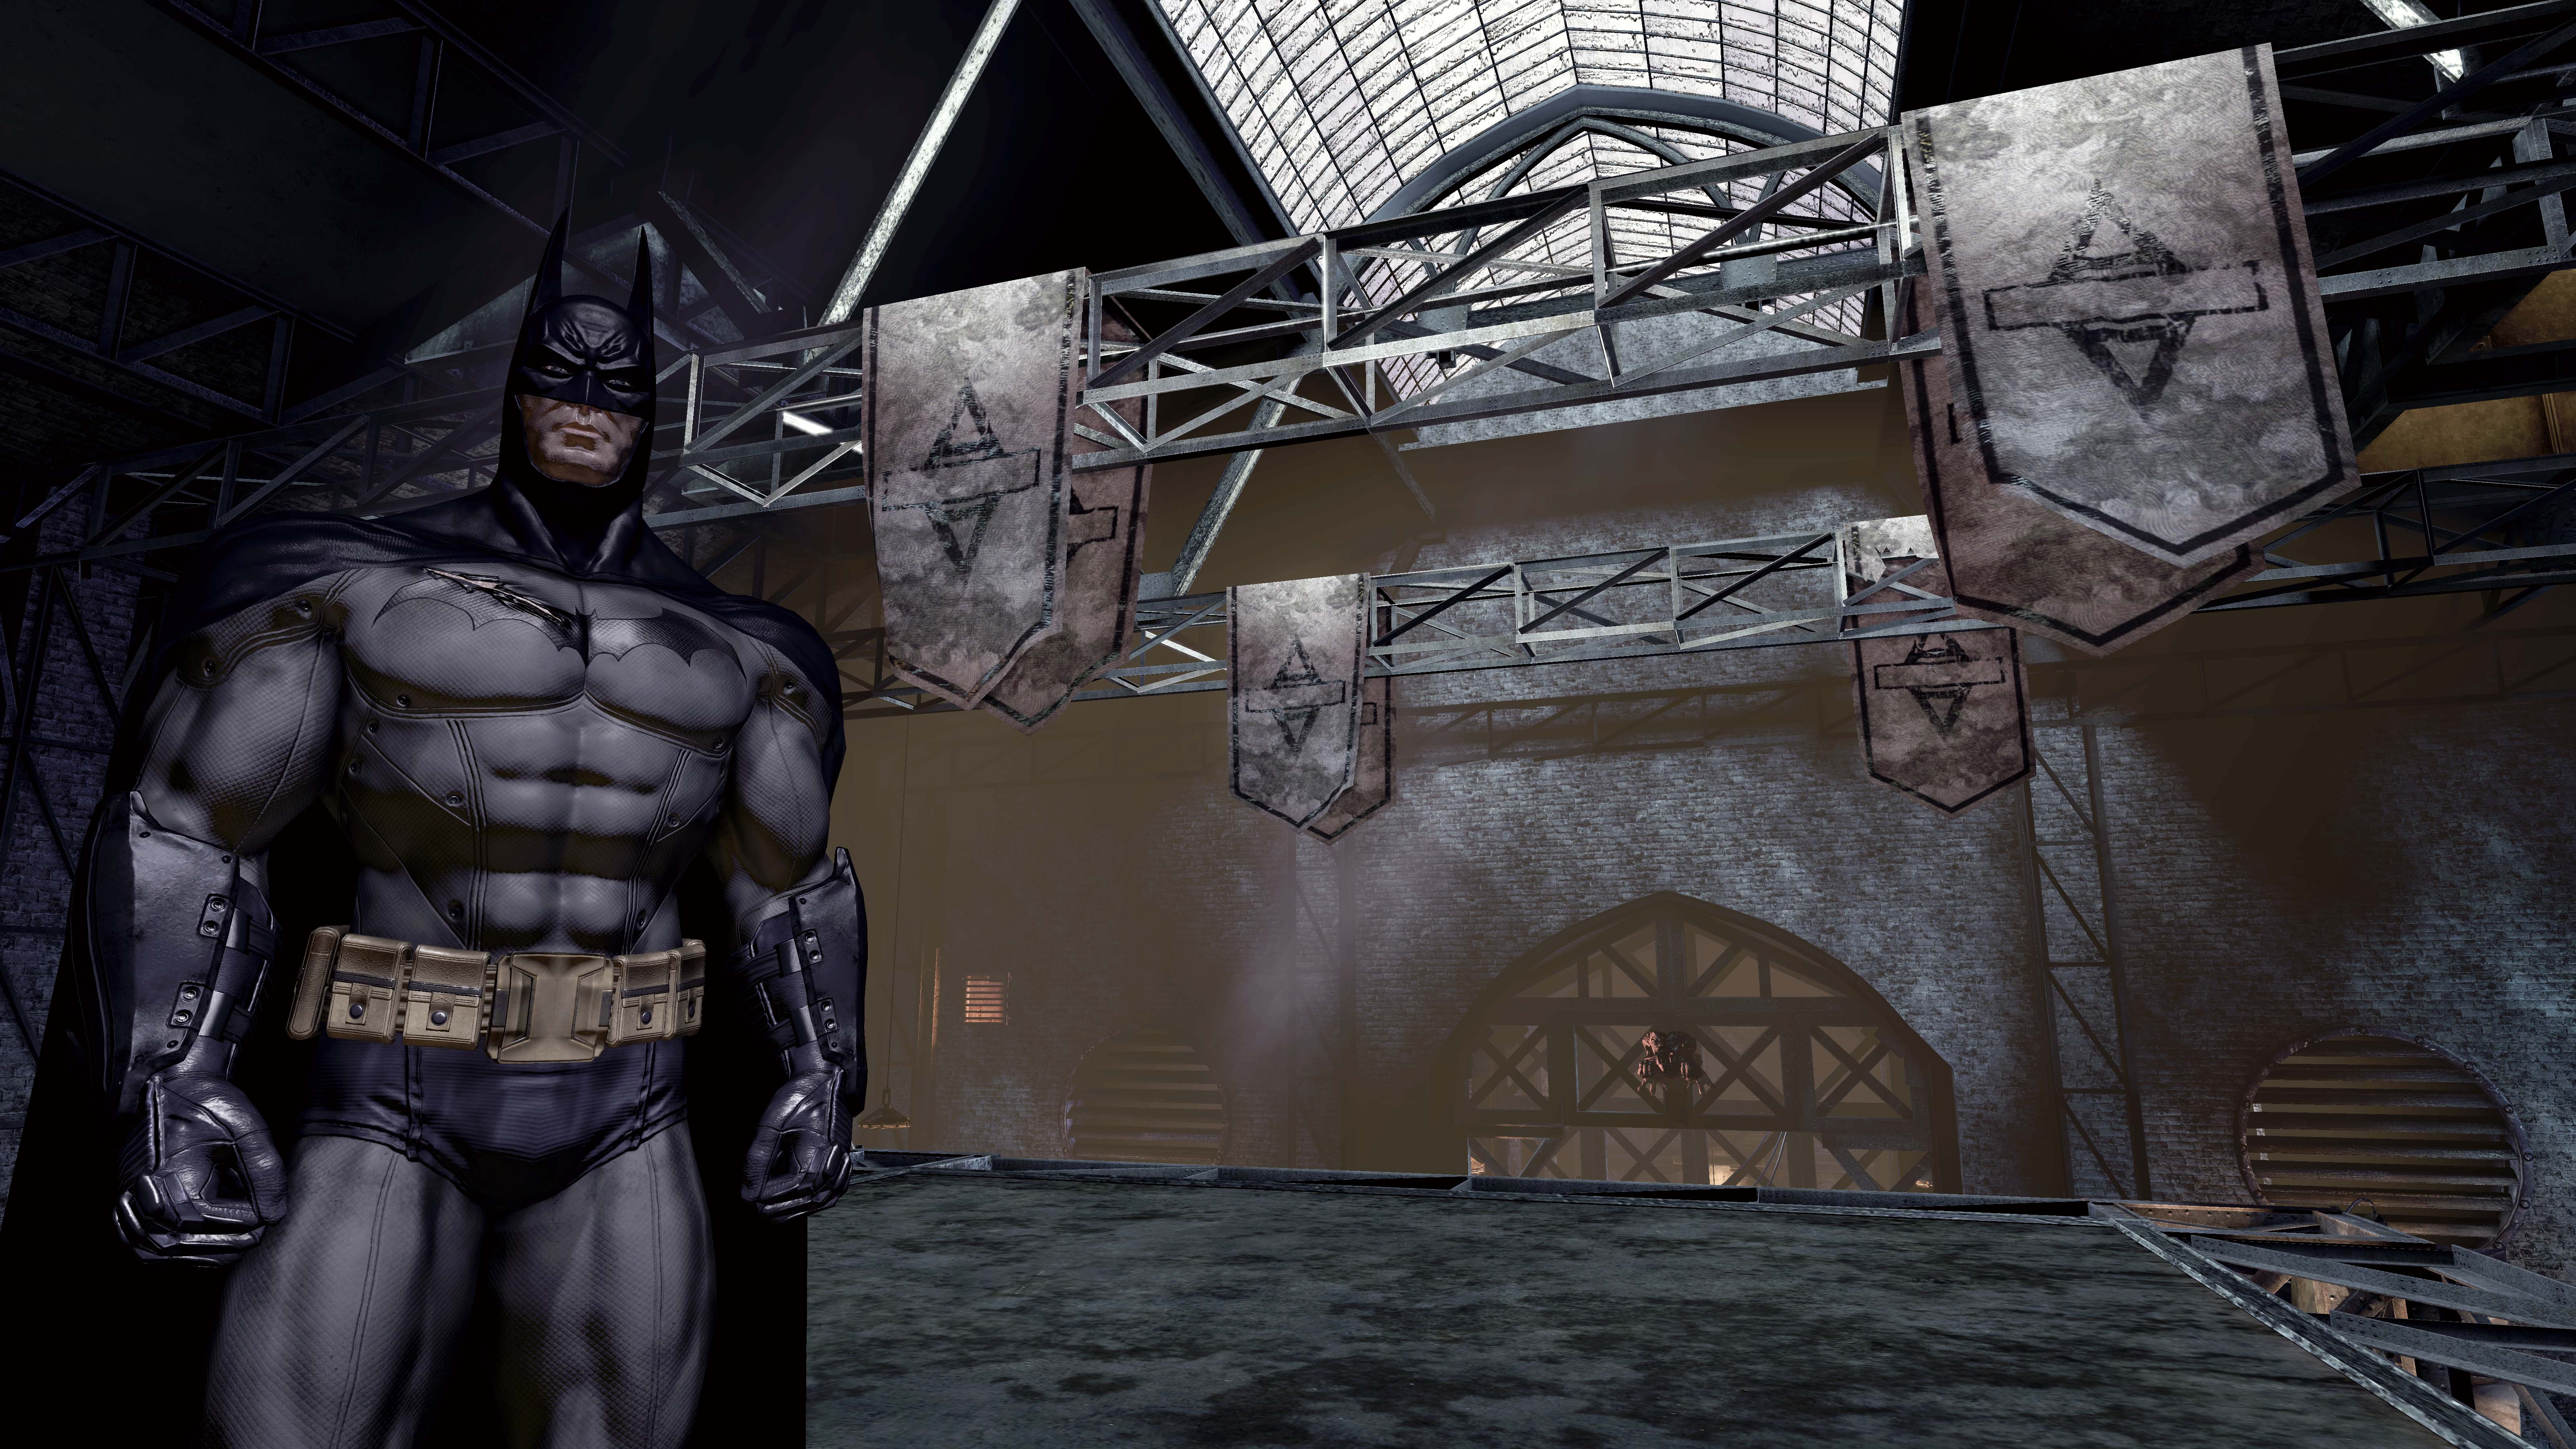 Бэтмен аркхам асайлум. Batman: Arkham Asylum (2009). Бэтмен Аркхем асилум. Batman Arkham 2009. Бэтмен Аркхем асайлум.